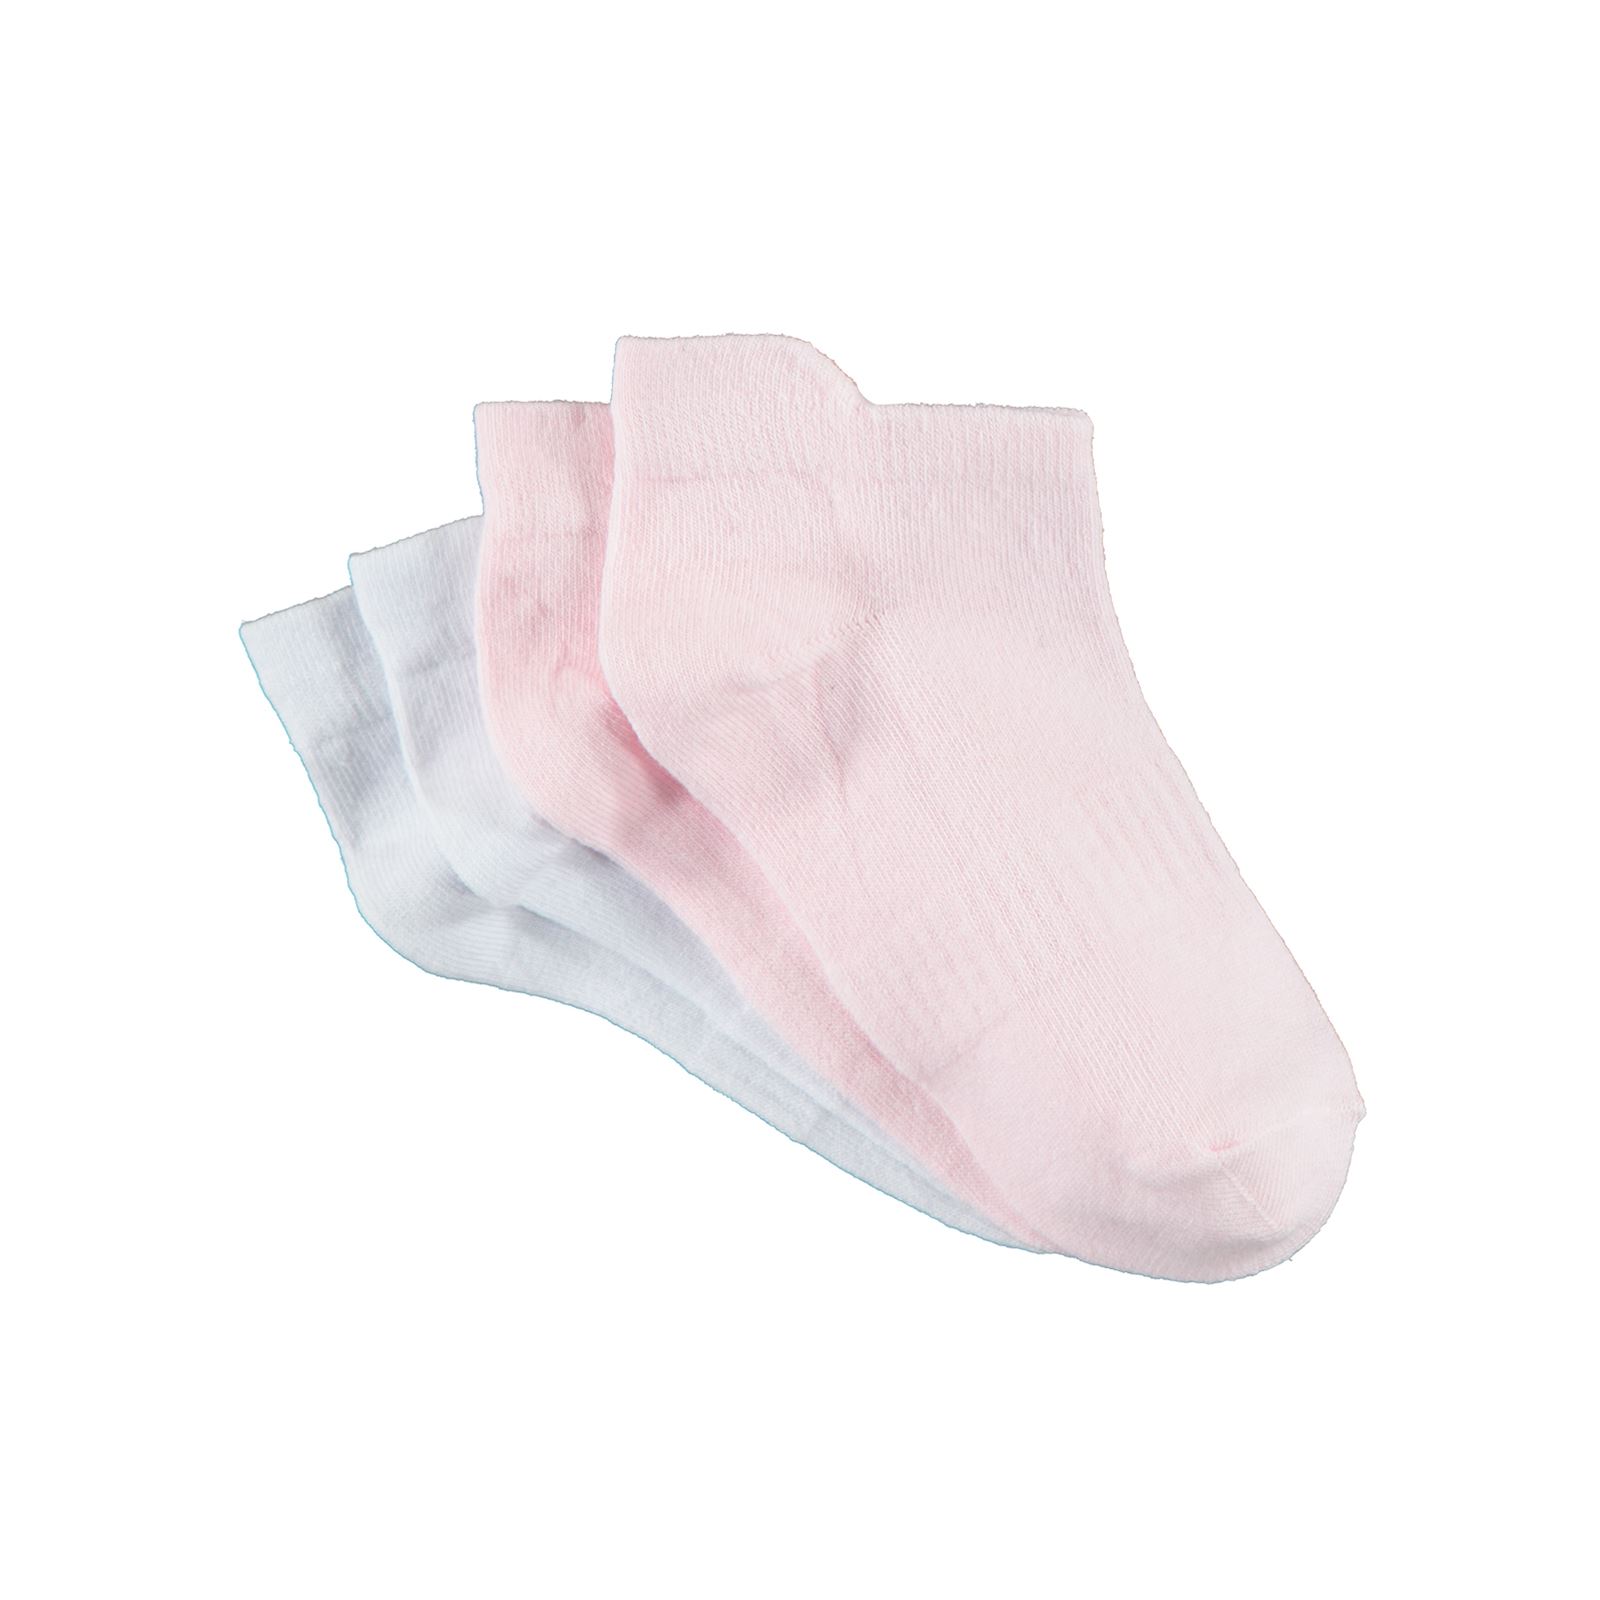 Gzn Kadın 2'li Dikişsiz Patik Çorap 36-40 Numara Beyaz-Pembe